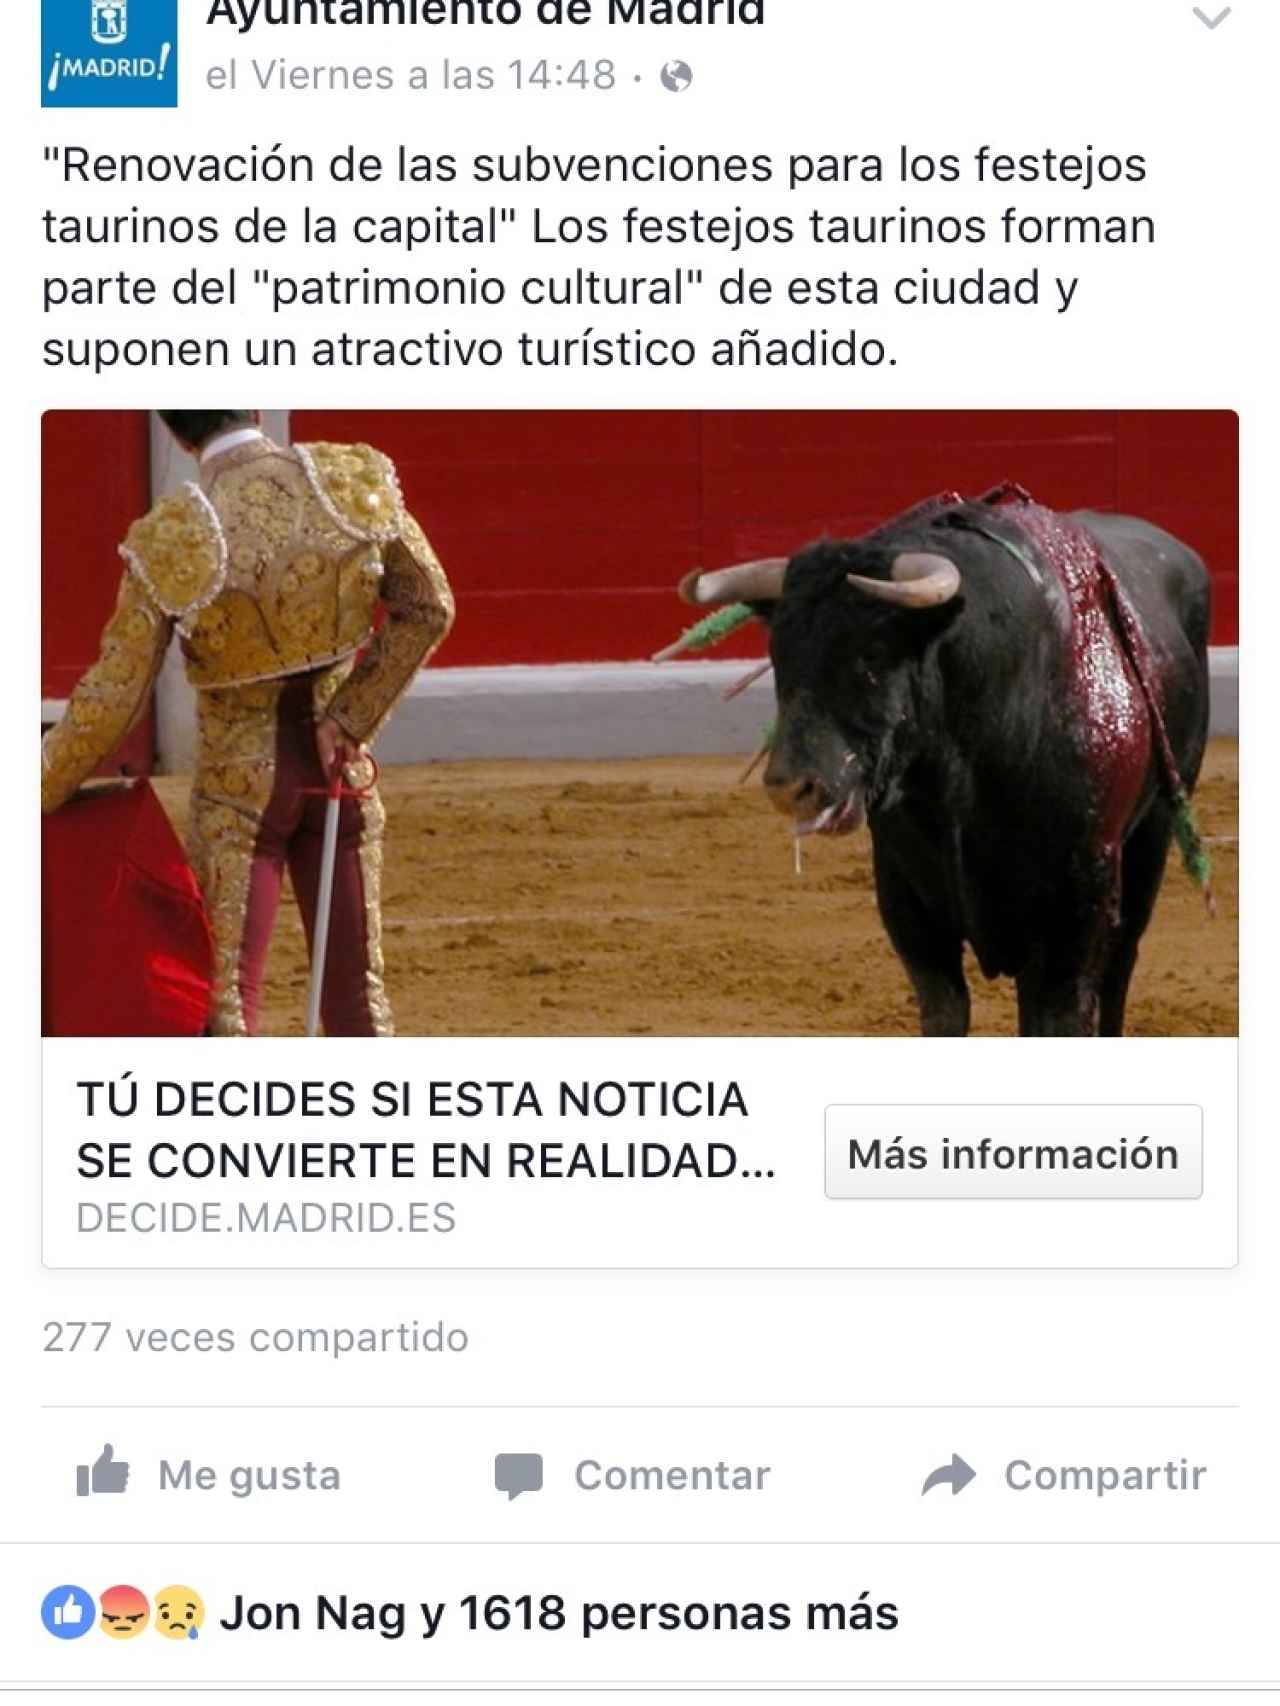 La propuesta del Ayuntamiento de Madrid en Facebook.